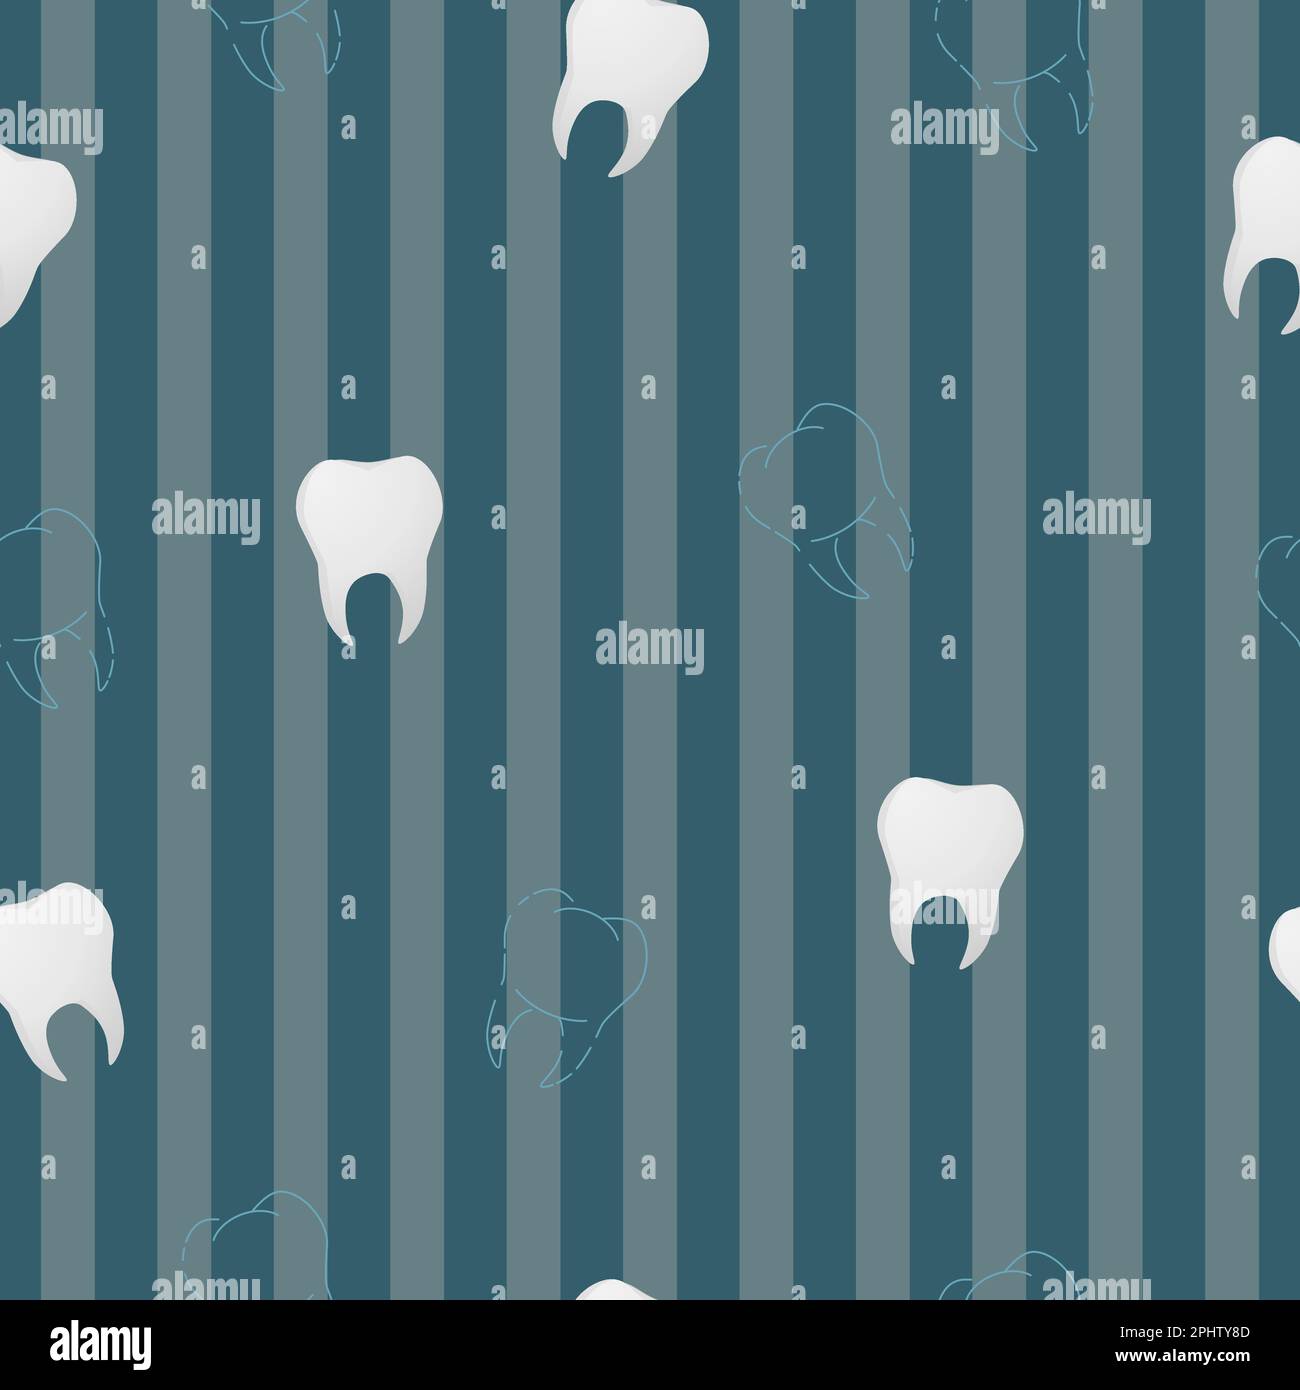 Digital Dentistry Stock Illustrations – 1,668 Digital Dentistry Stock  Illustrations, Vectors & Clipart - Dreamstime